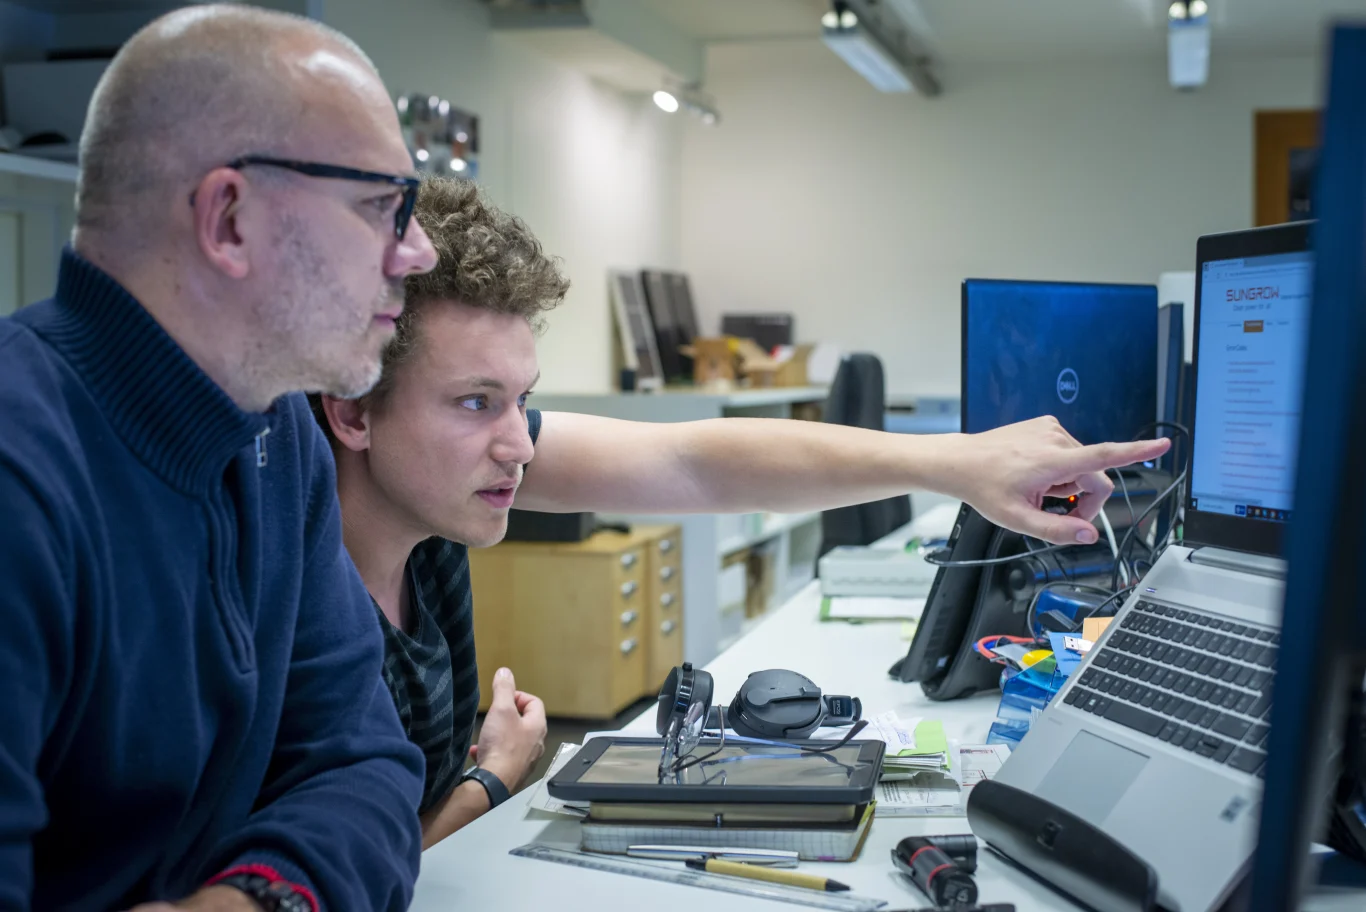 2 medewerkers van IZEN kijken samen naar een computerscherm. Eén van de mannen wijst naar het scherm waarop een webpagina te zien is van omvormer-fabrikant Sungrow